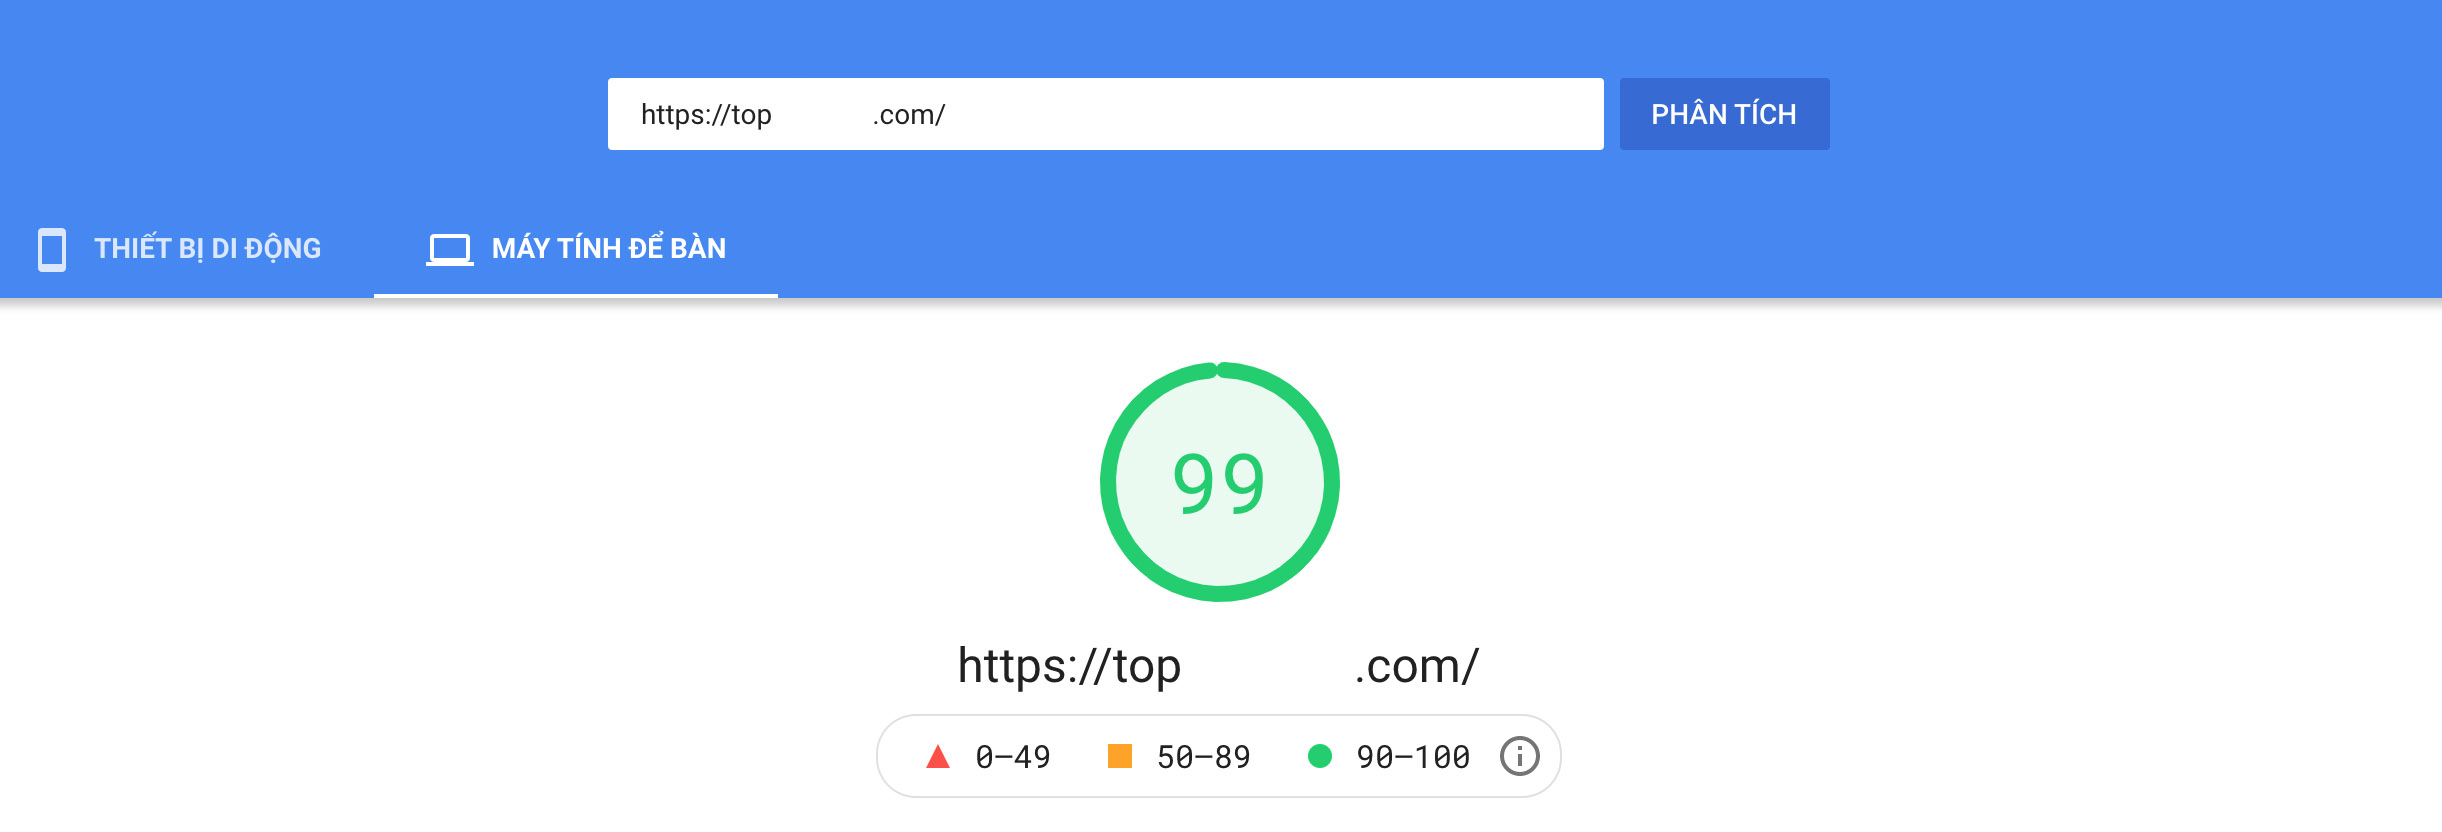 Dịch vụ tối ưu tốc độ website (Google PageSpeed Insights) của SeeU.vn cam kết 100% đạt kết quả tốt từ 90 ~ 100.